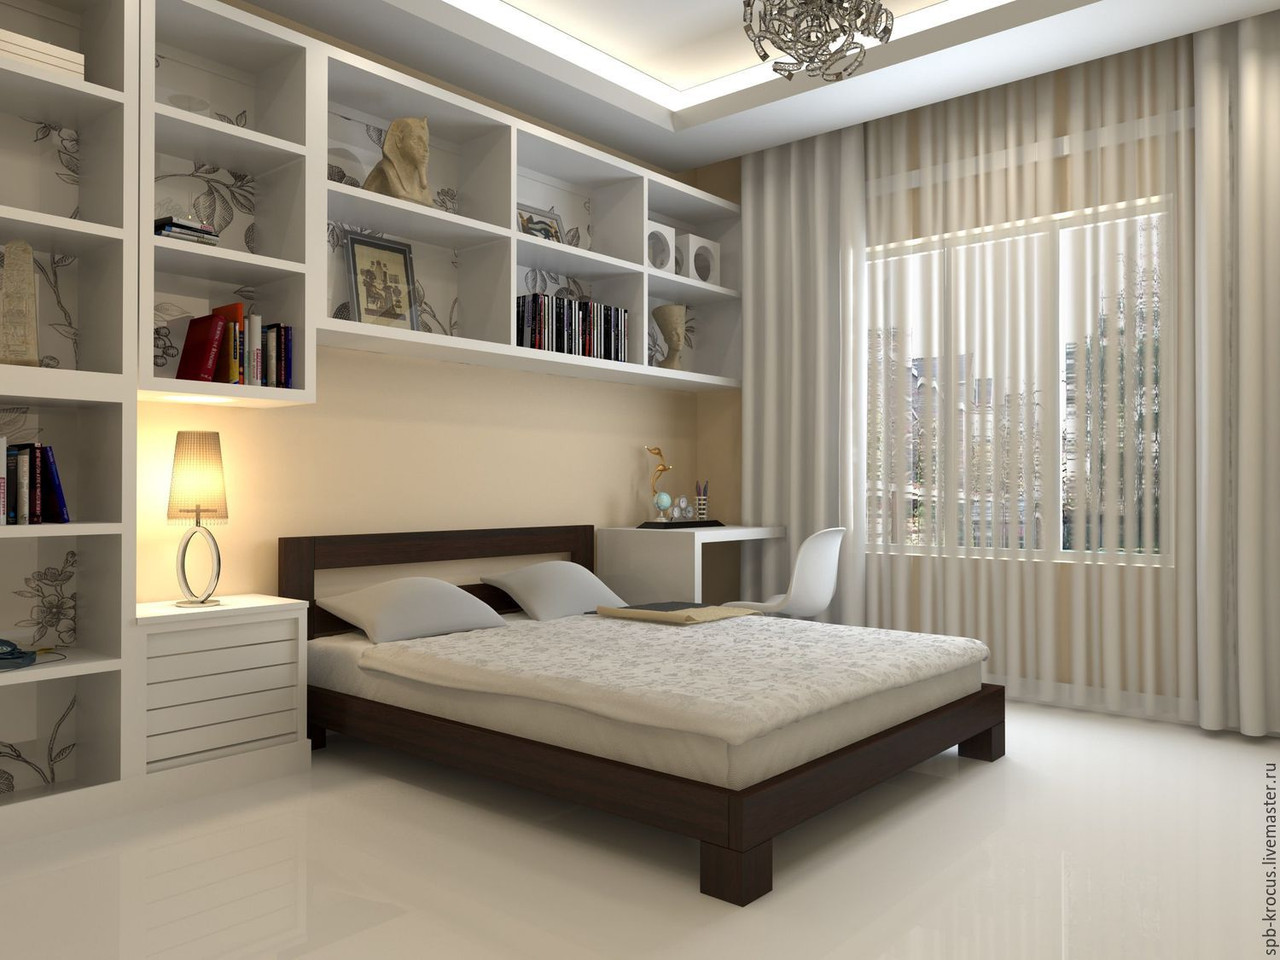 Ліжко двоспальне дерев'яне Star (Стар) Мікс меблі, розмір спального місця 160х200, колір венге